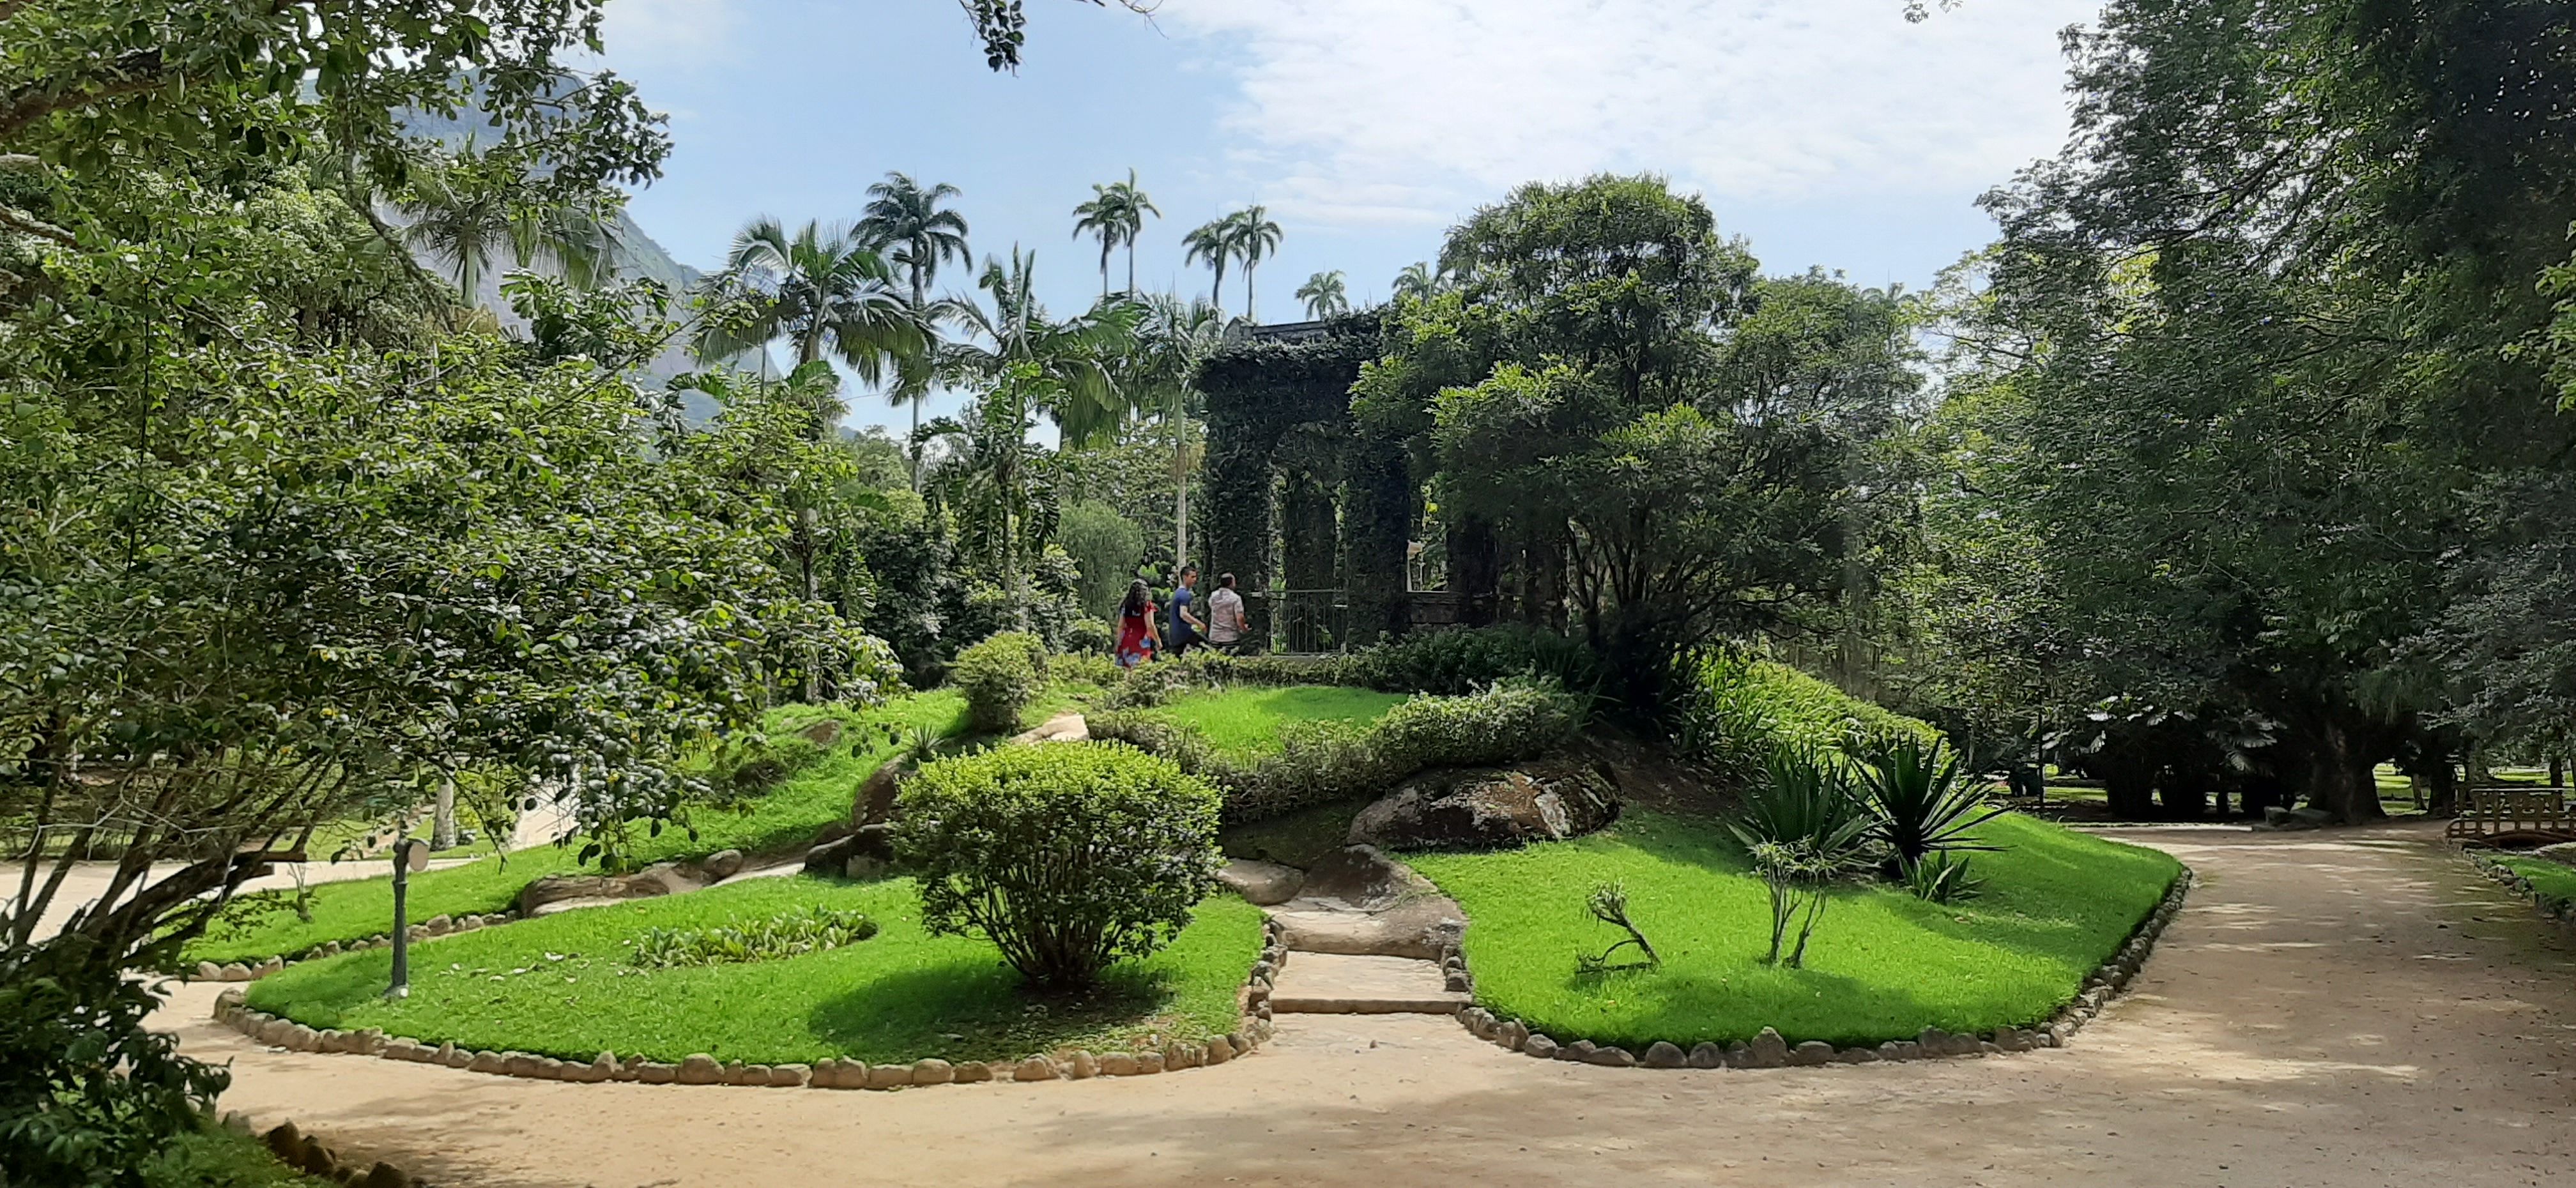 Le jardin Botanique de Rio